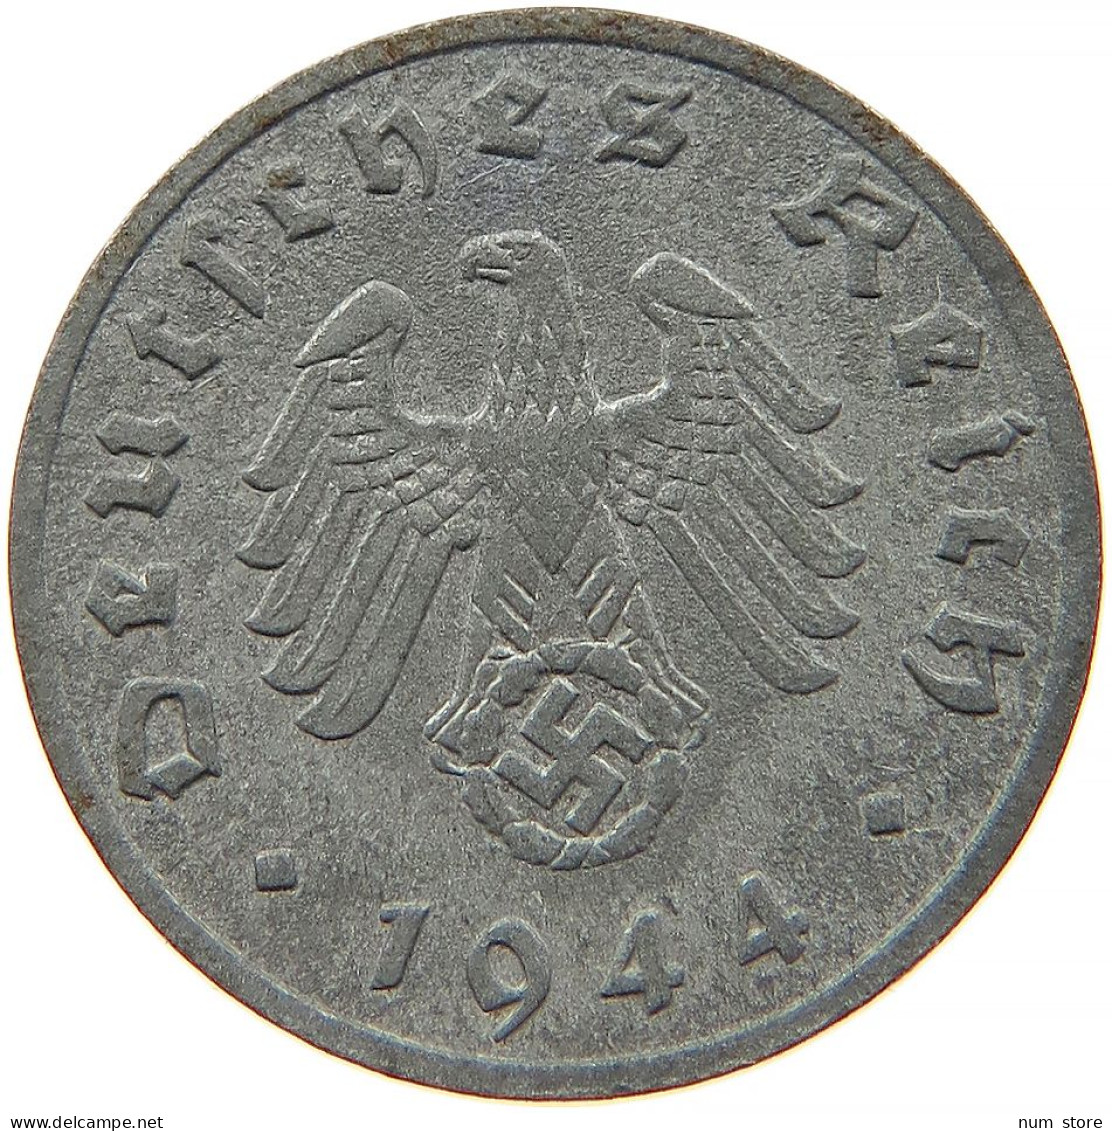 GERMANY 1 REICHSPFENNIG 1944 F #s091 1057 - 1 Reichspfennig